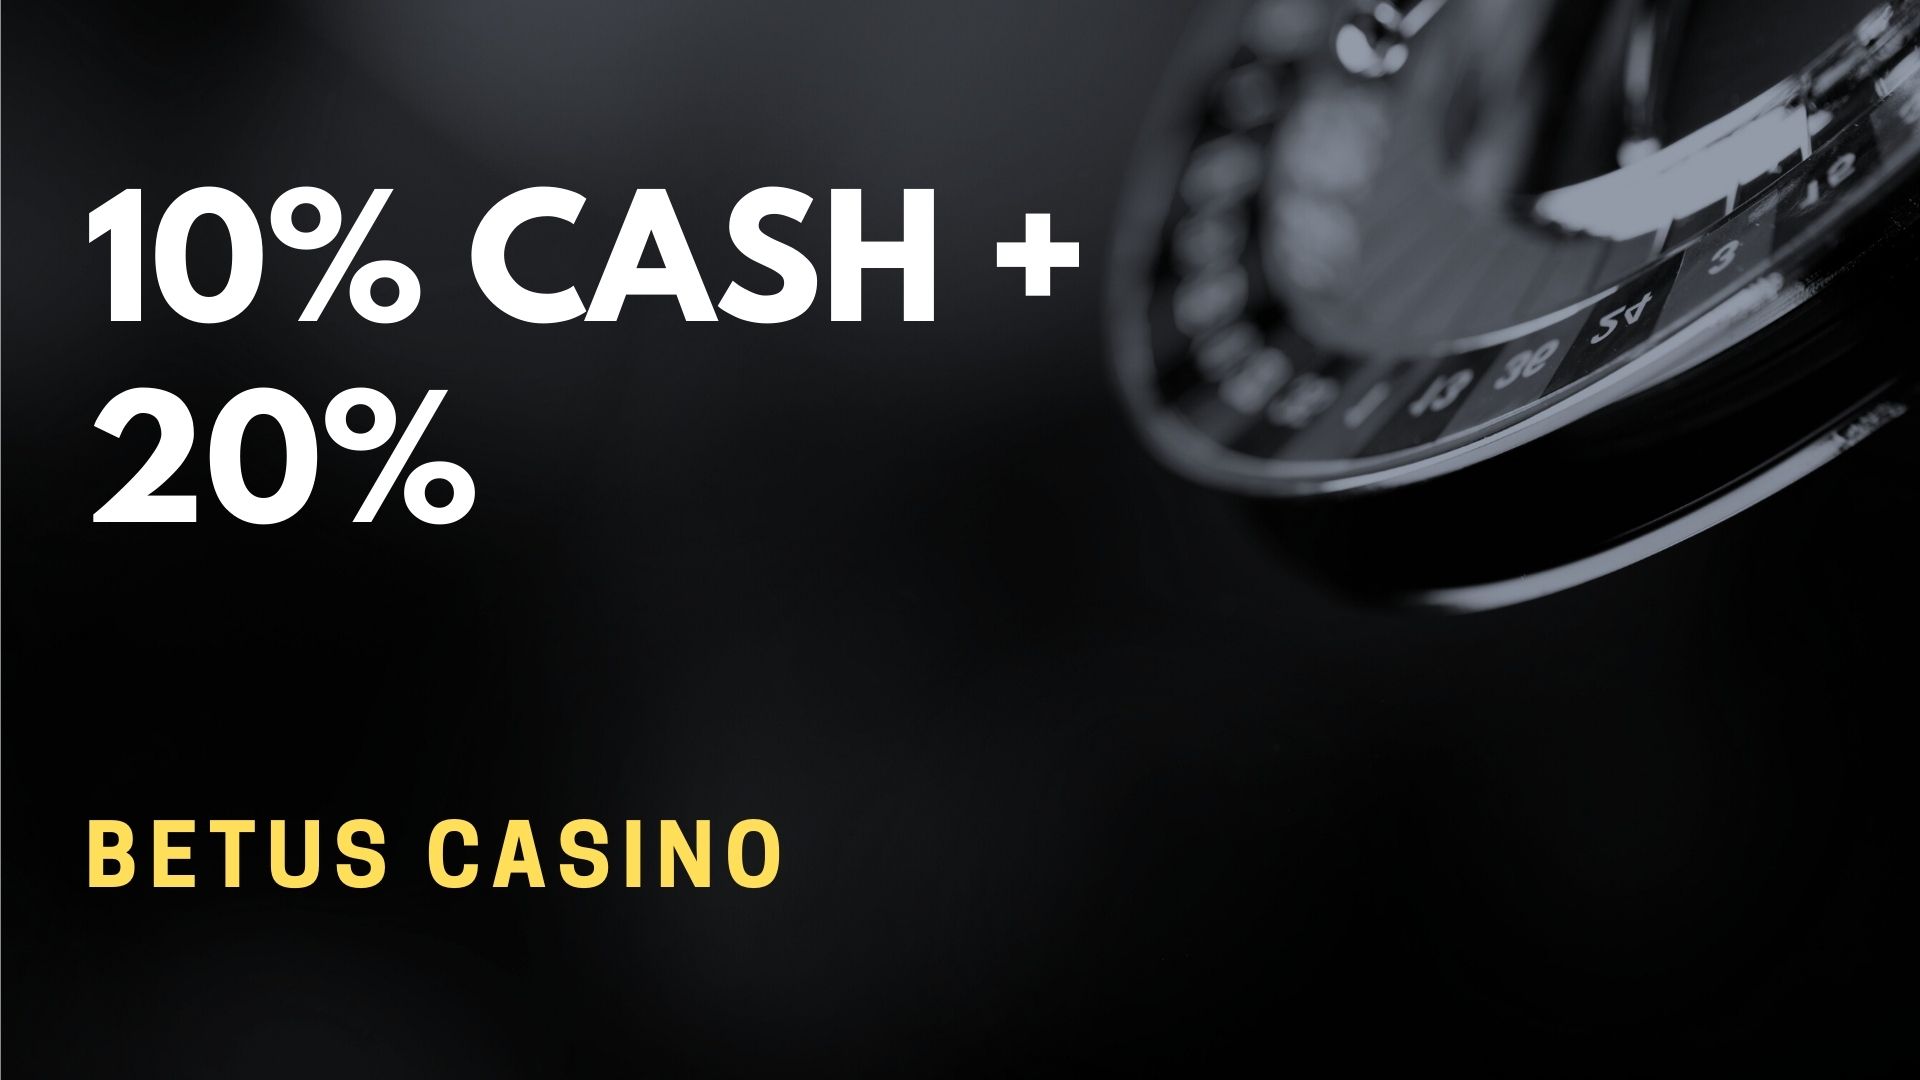 ⭐ BetUS Casino 10 Cash + 20 Casino Bonus